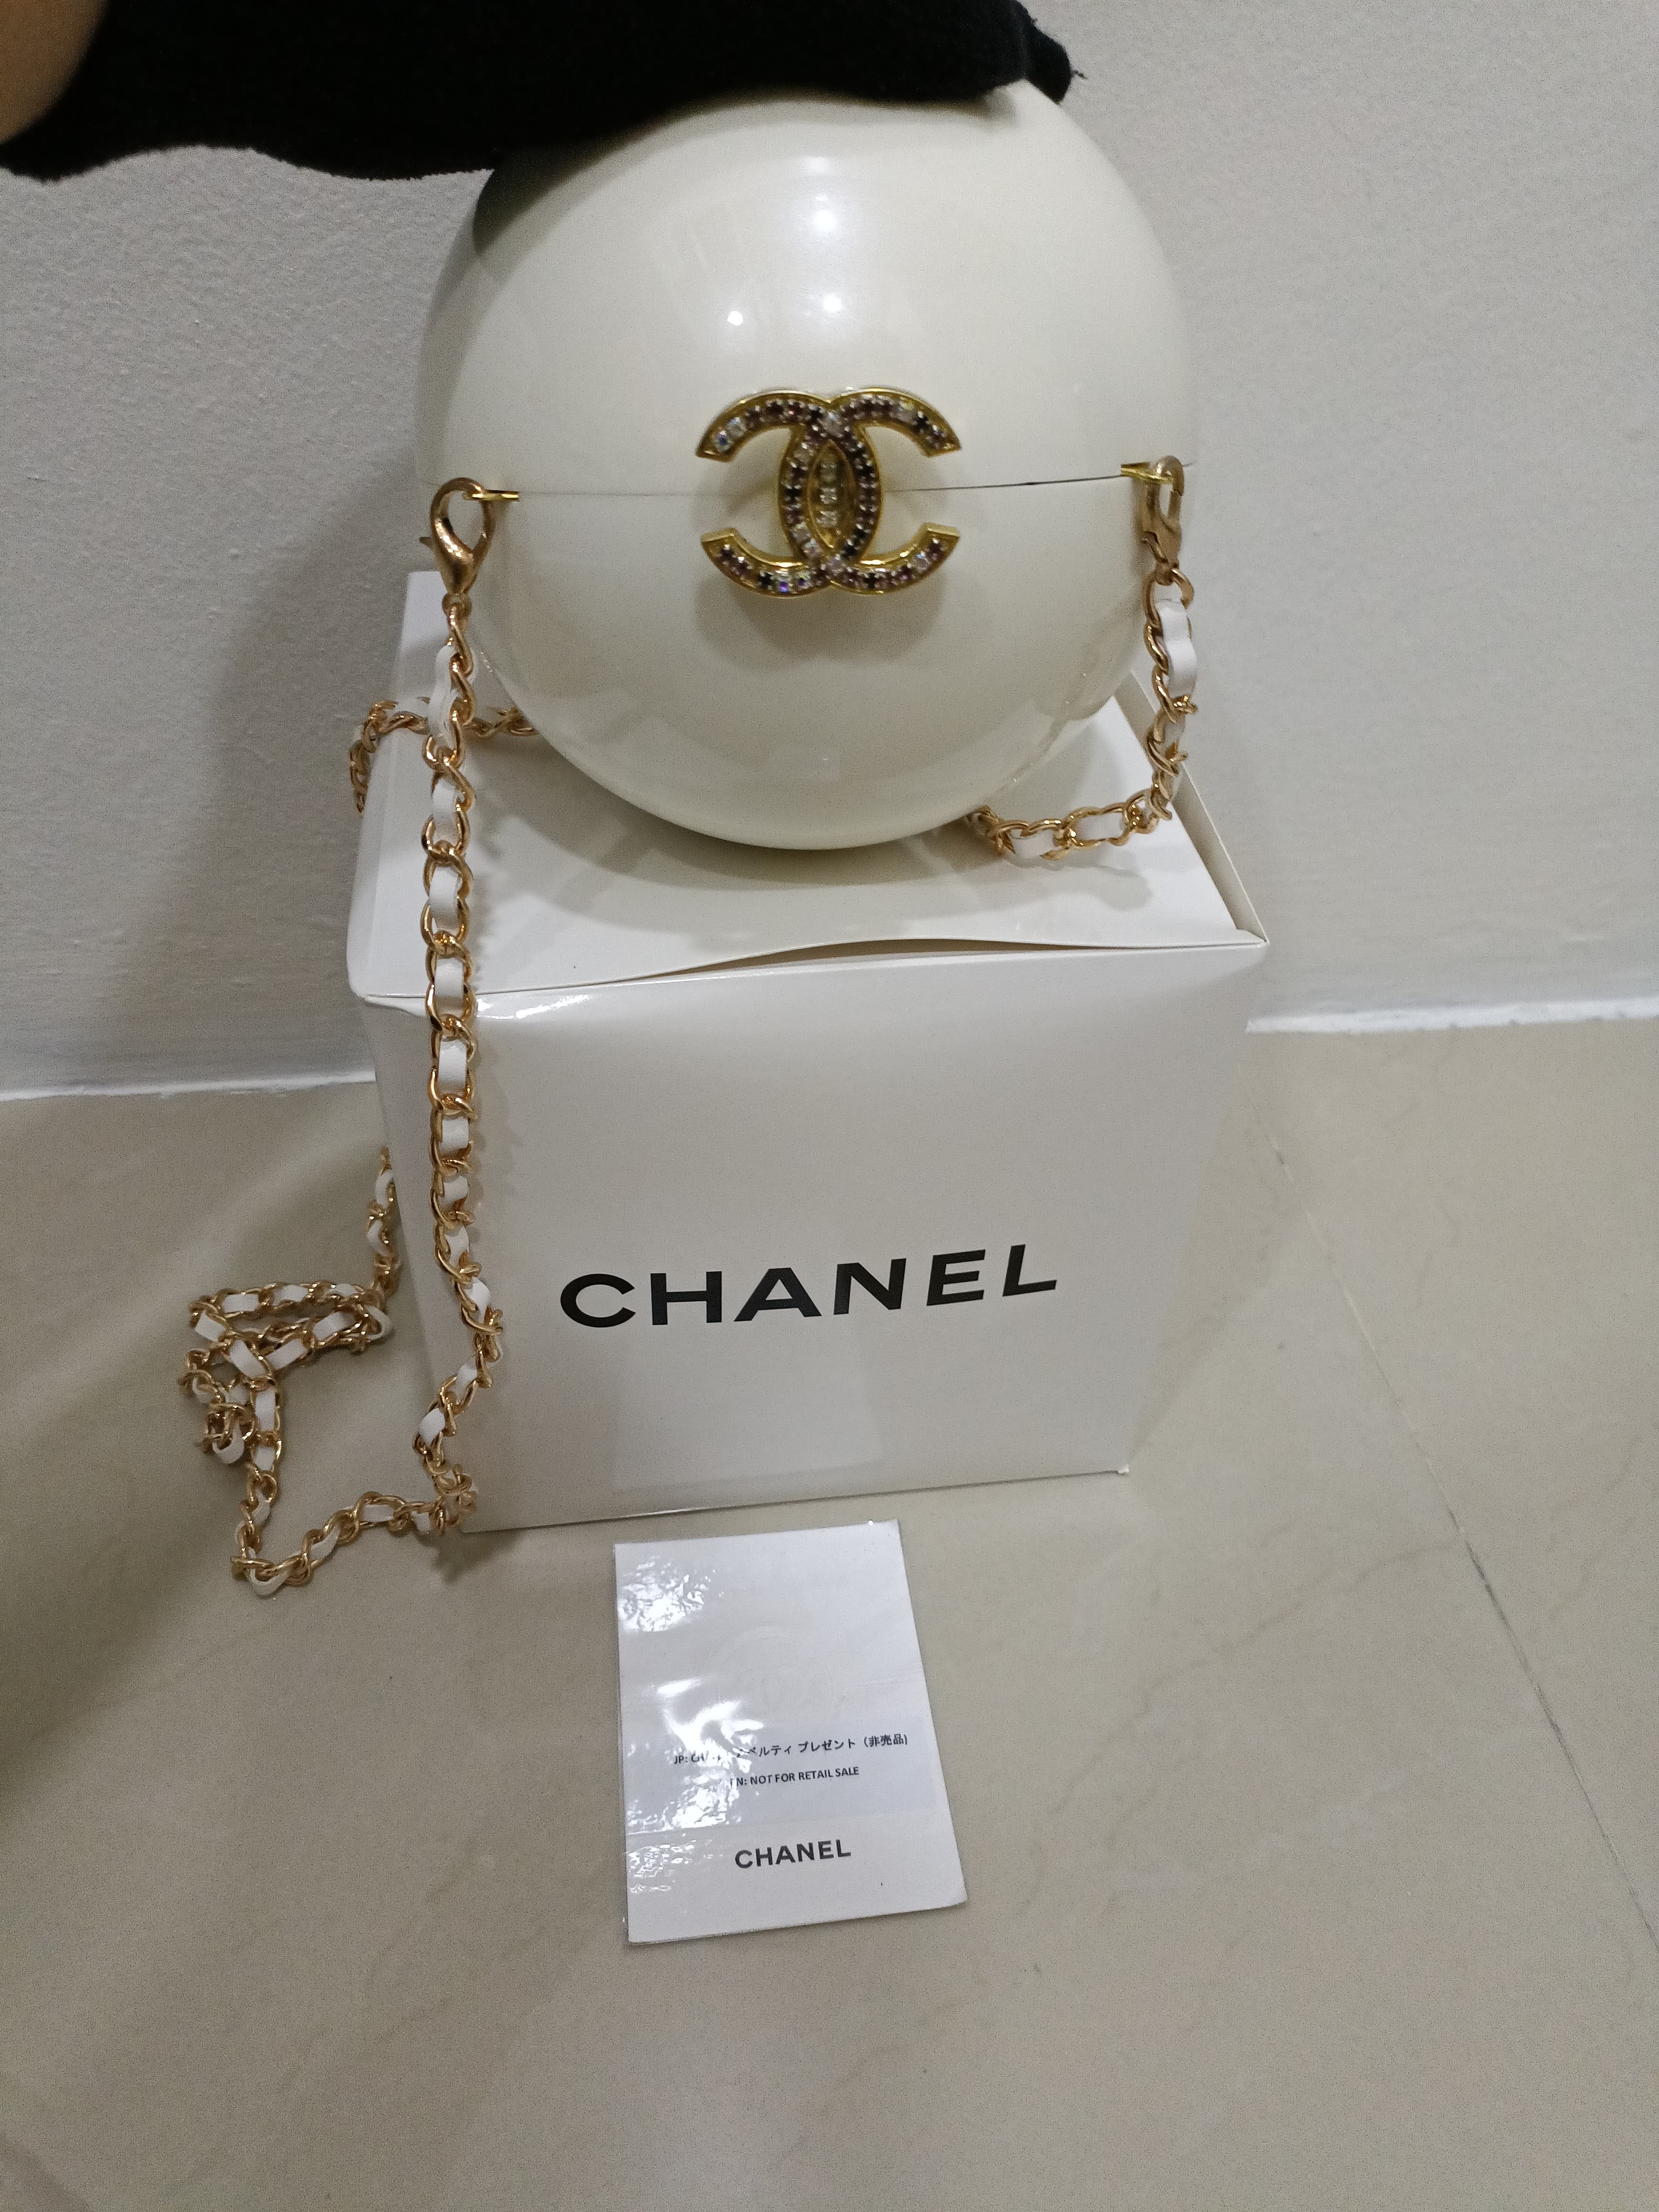 Chanel vip gift ball bag｜TikTok Search